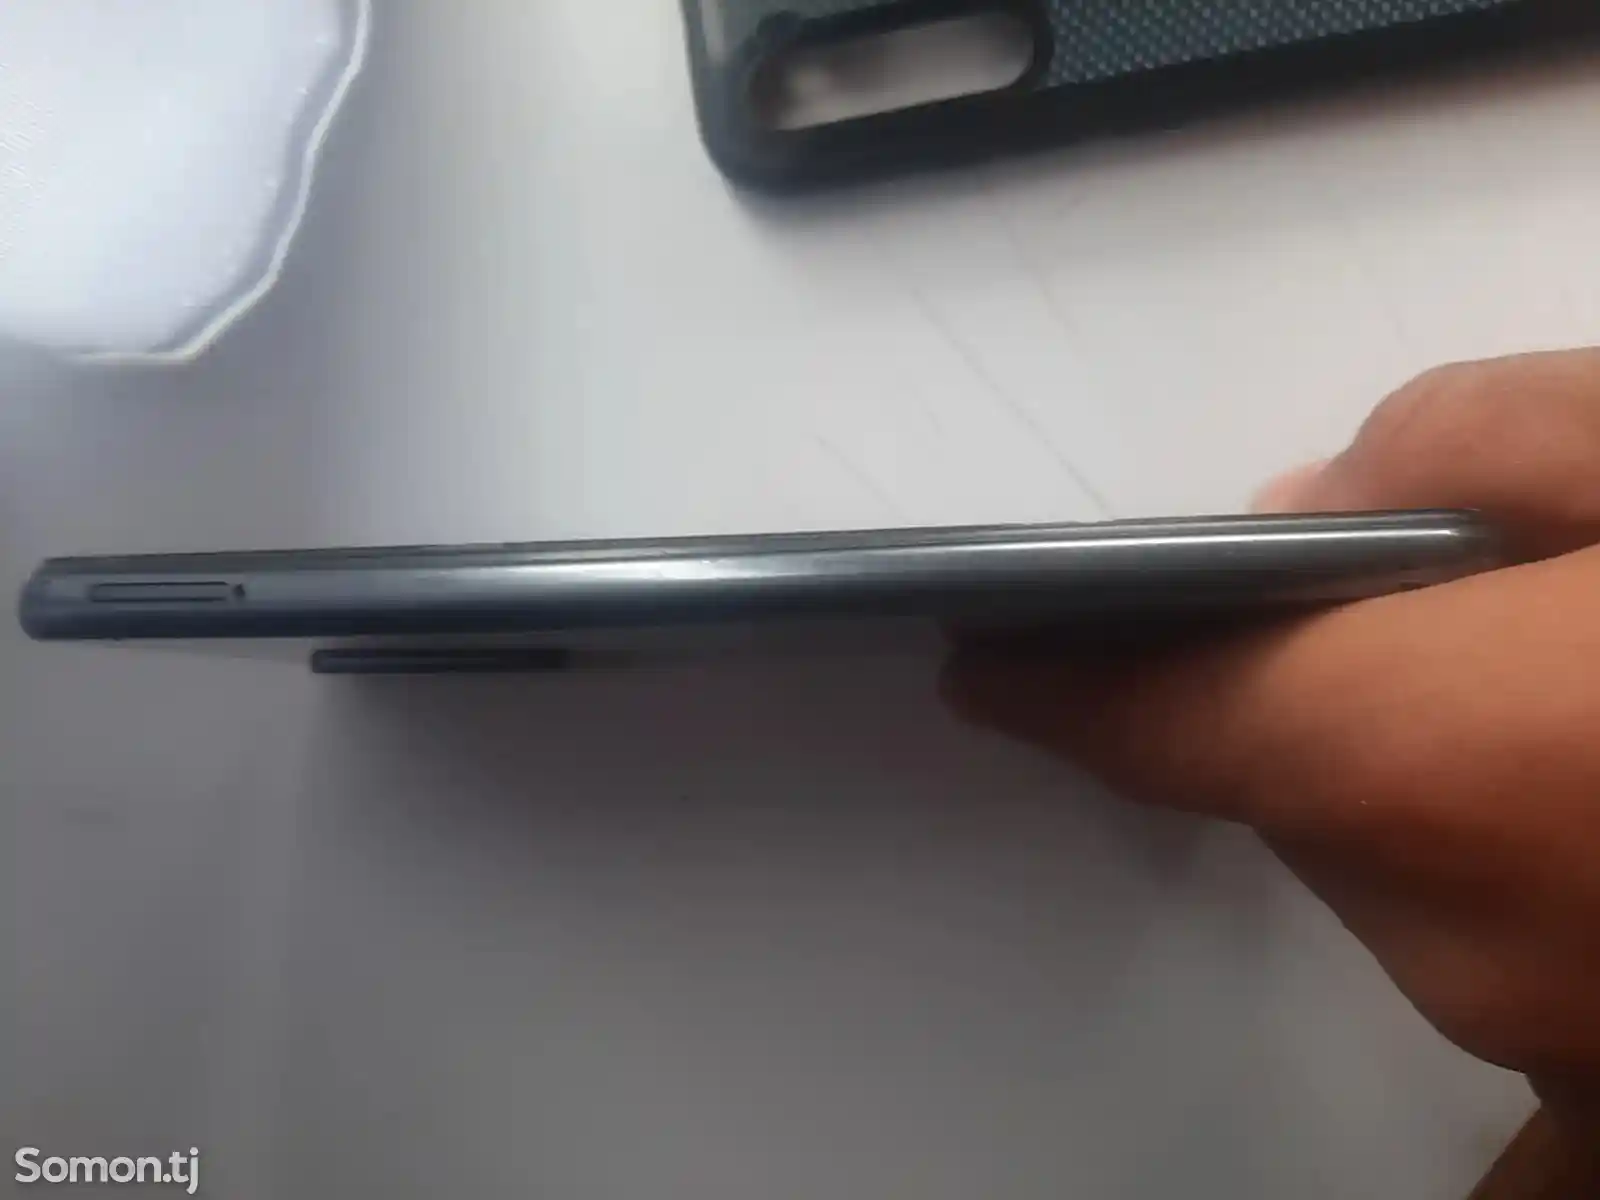 Телефон Xiaomi Redmi-1